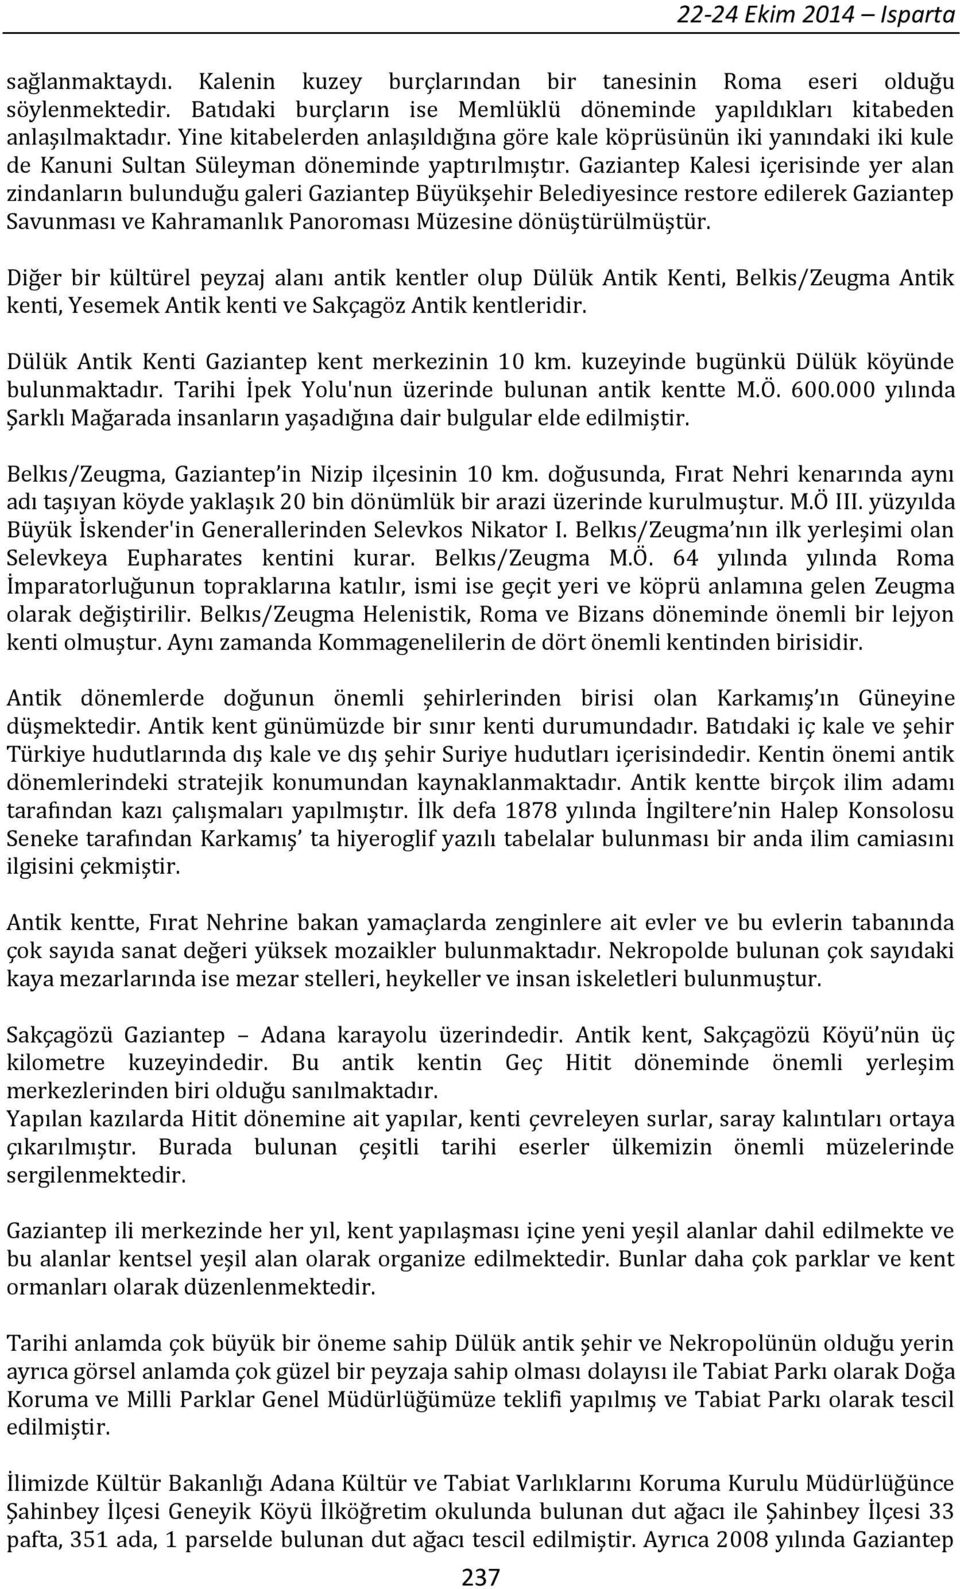 Gaziantep Kalesi içerisinde yer alan zindanların bulunduğu galeri Gaziantep Büyükşehir Belediyesince restore edilerek Gaziantep Savunması ve Kahramanlık Panoroması Müzesine dönüştürülmüştür.